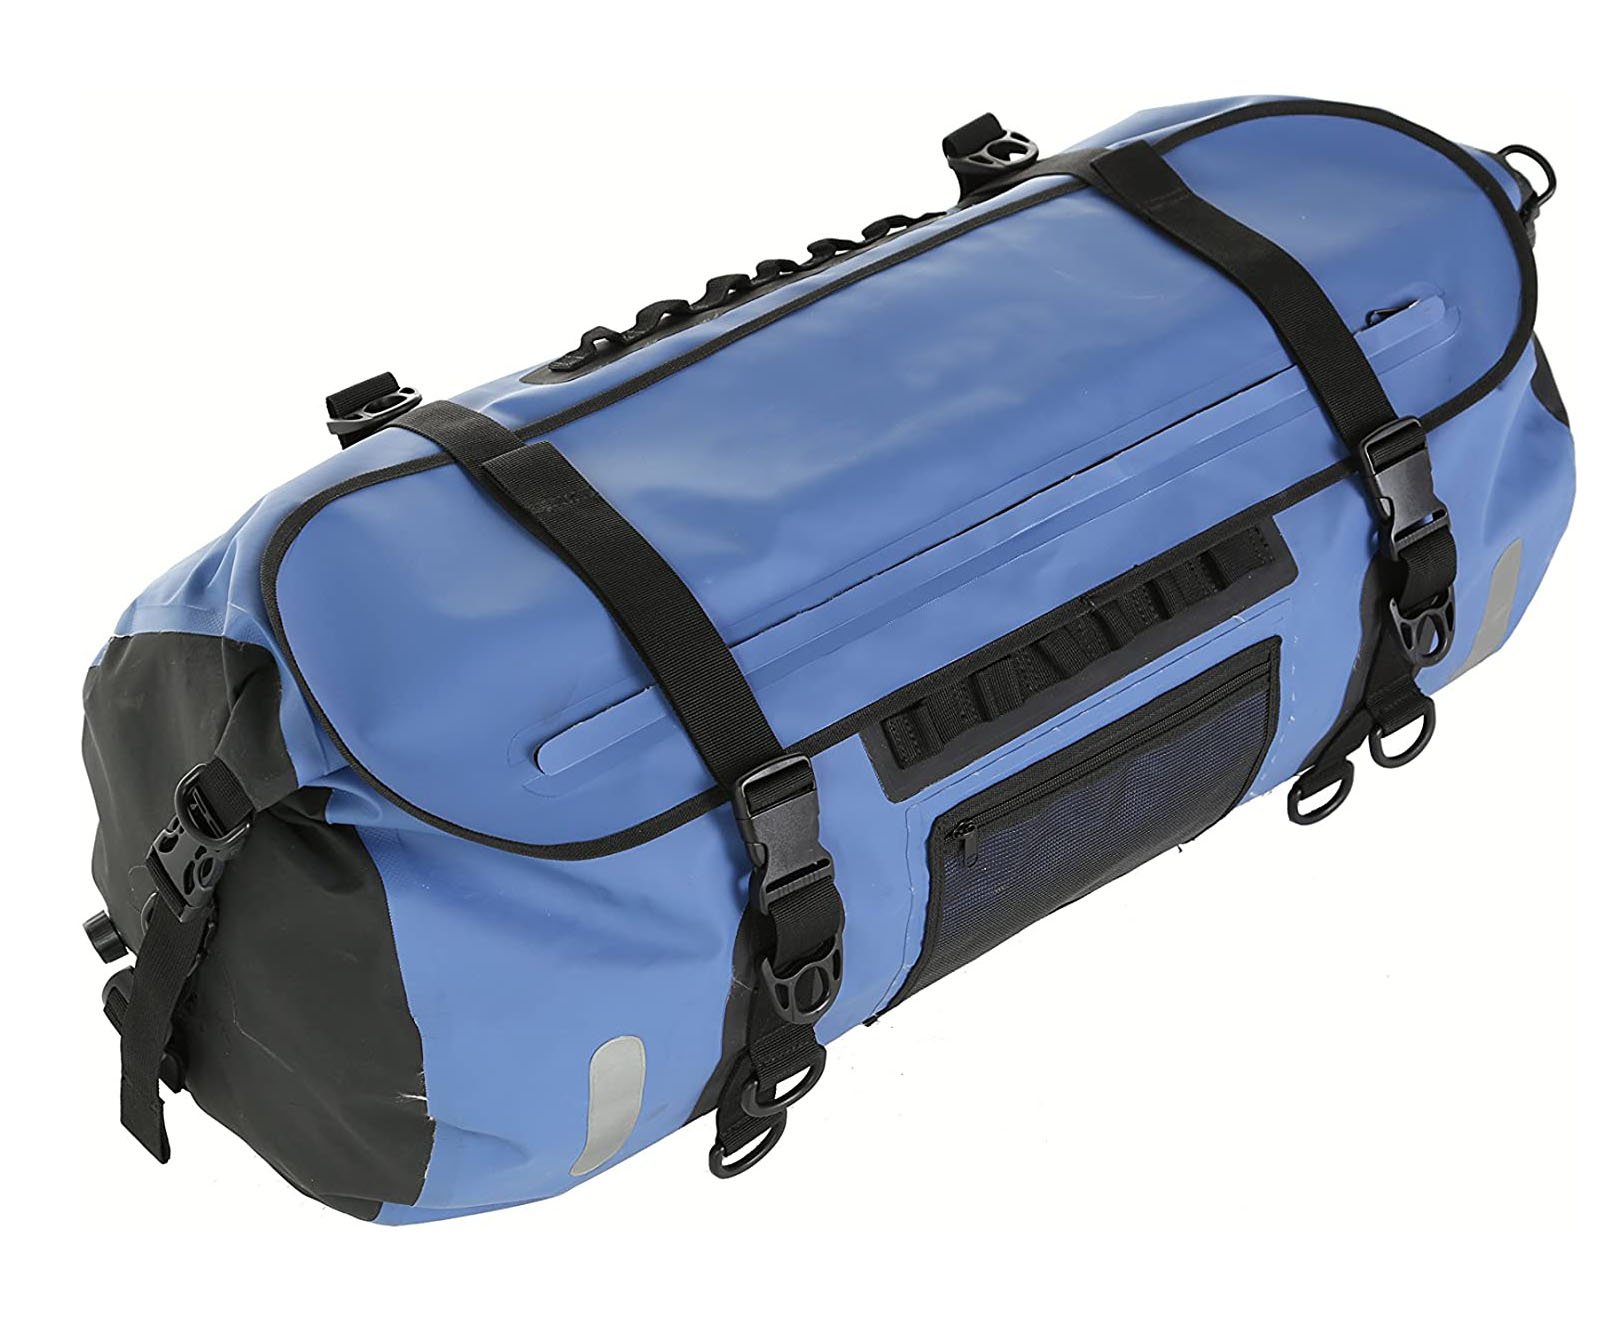 80 Liter Waterproof Duffle Bag Dry Backpack with adjustable waterproof shoulder straps